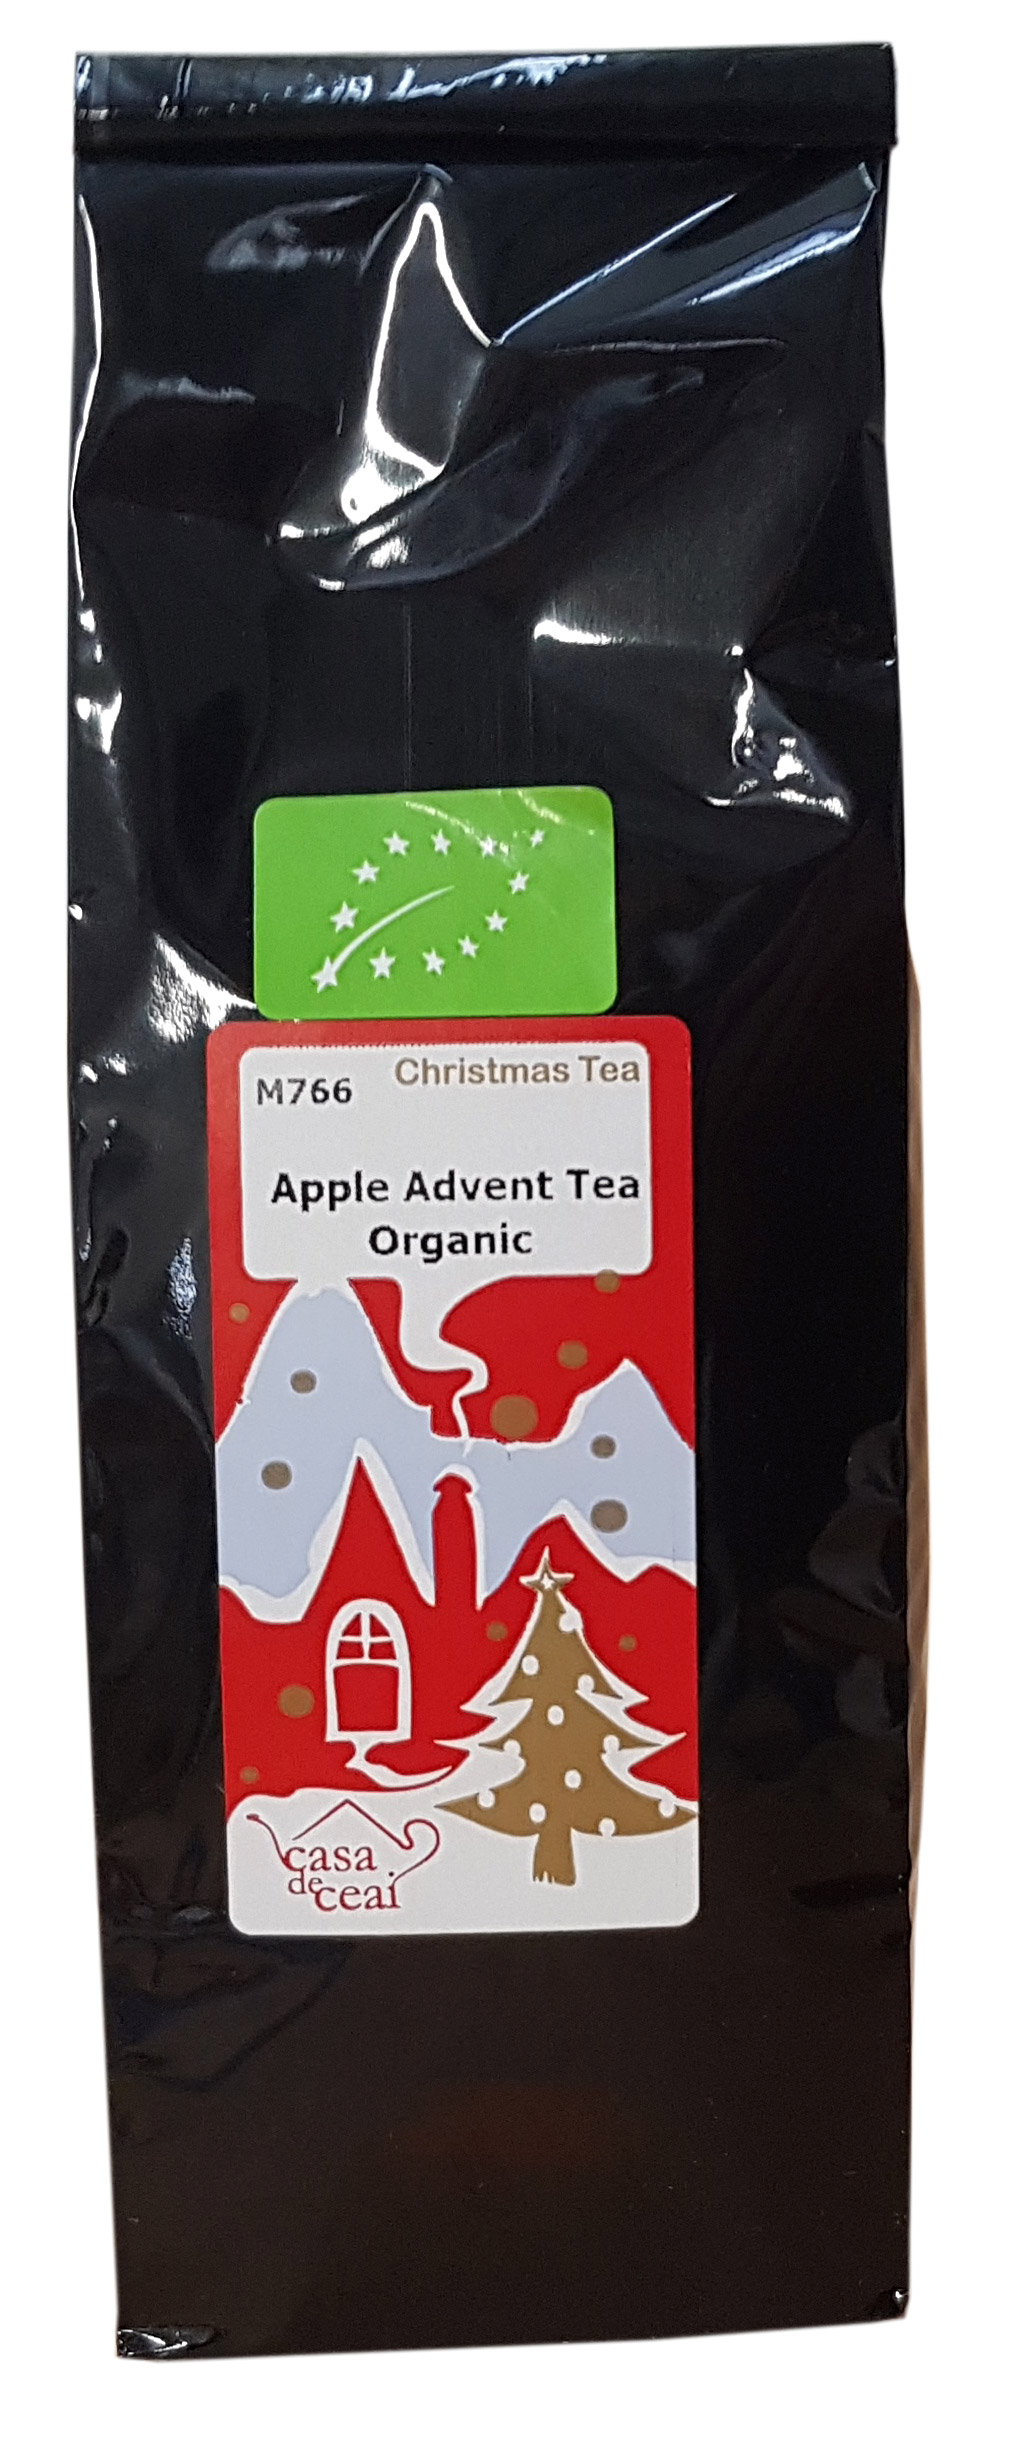 M766 Apple Advent Tea Organic | Casa de ceai